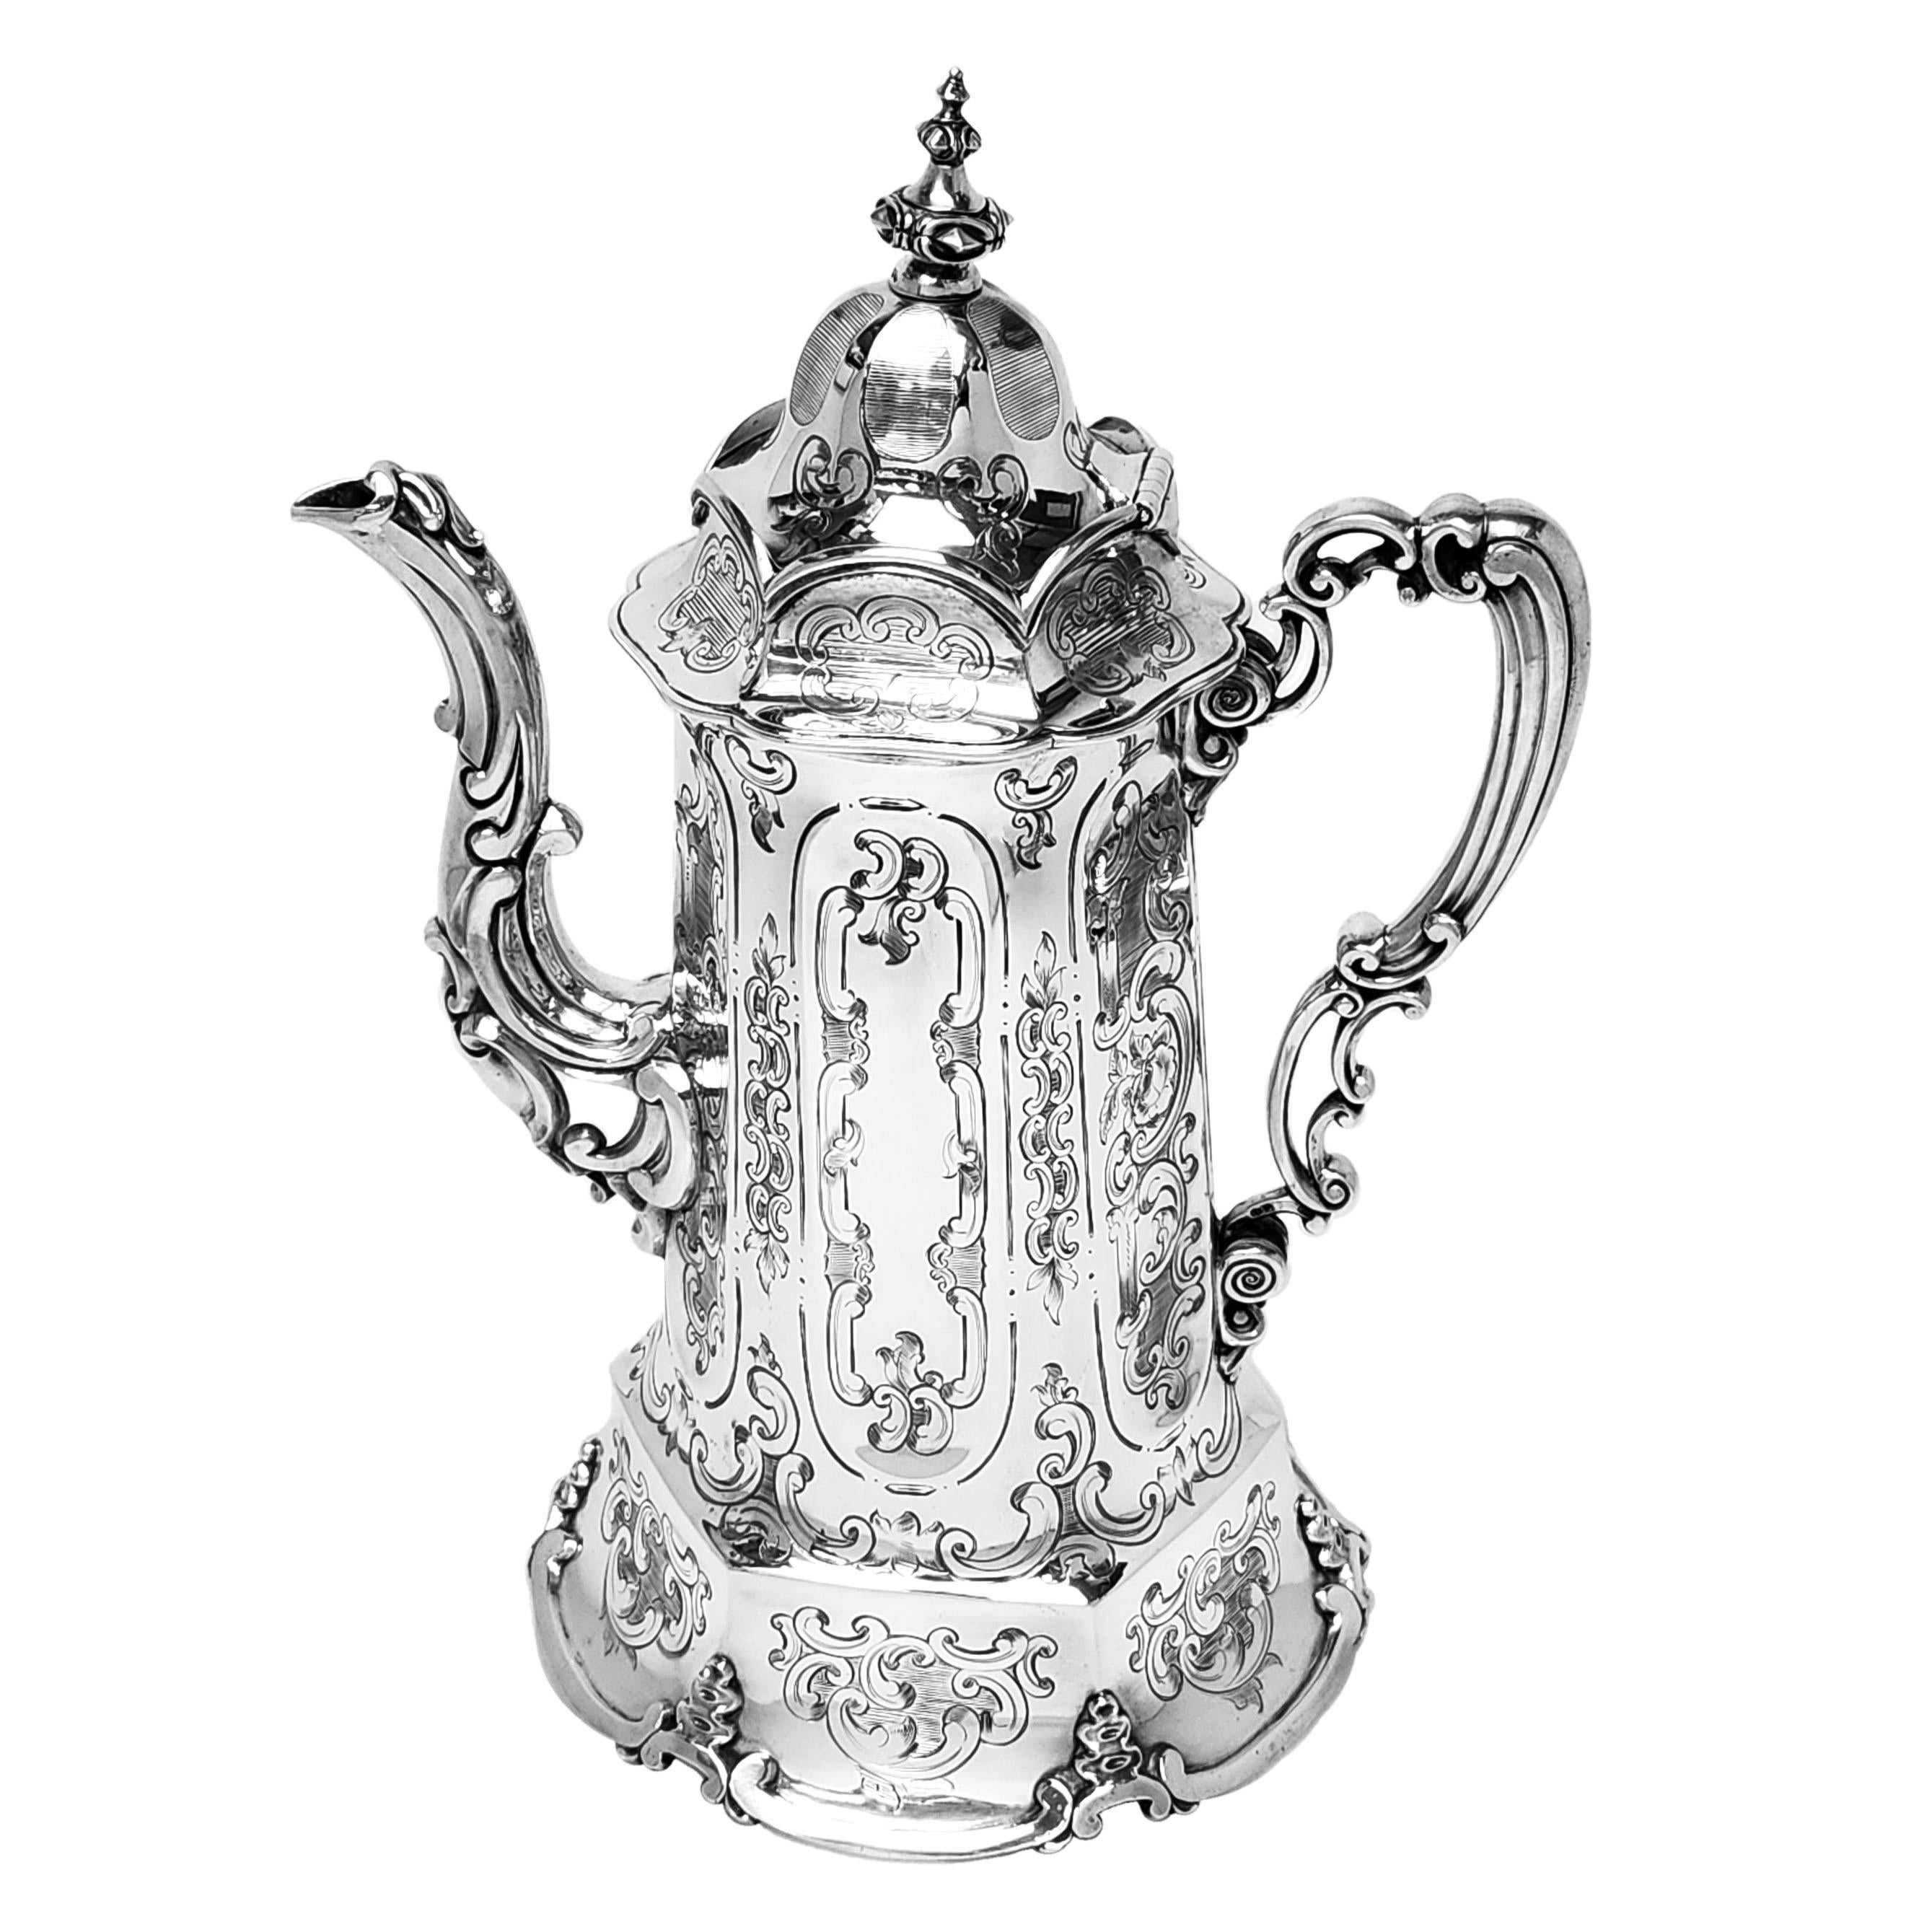 Eine beeindruckende antike viktorianische 4 Stück Silber Tee und Kaffee Set bestehend aus einer Kaffeekanne, Teekanne, Sahne / Milchkännchen & Zuckerdose. Dieses Teeservice zeichnet sich durch ein getäfeltes gotisches Design aus, wobei jedes Paneel